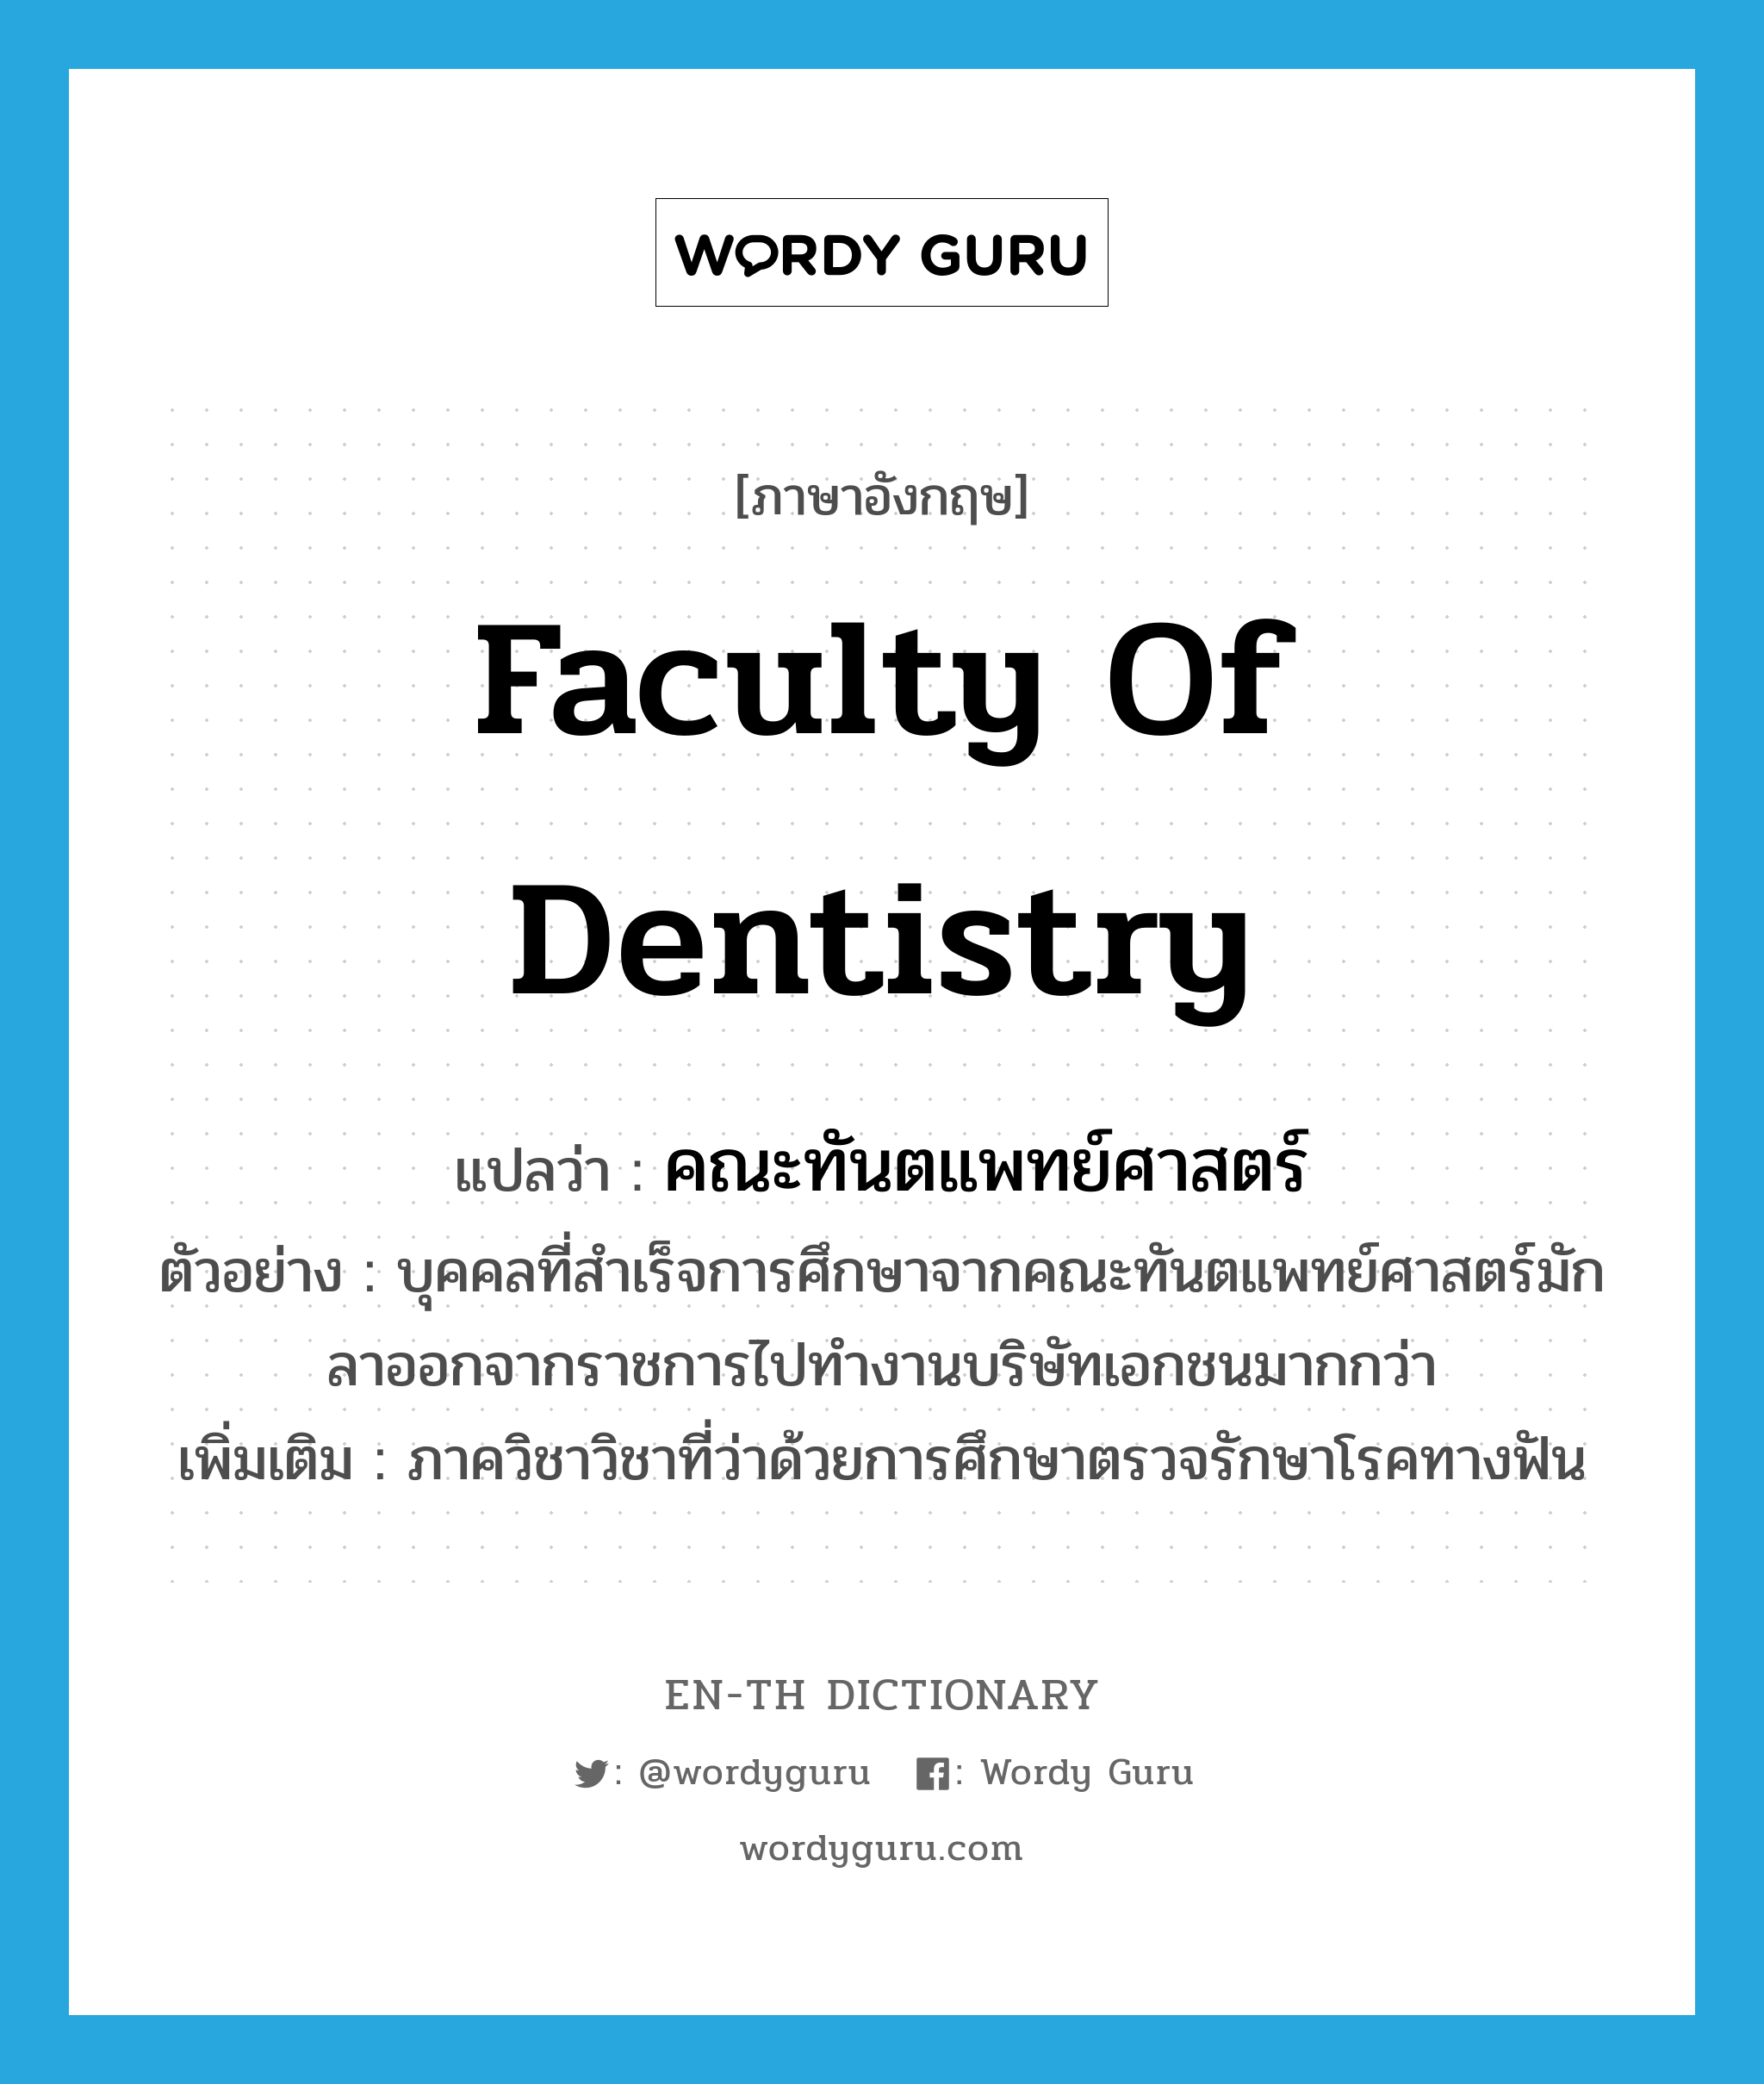 Faculty of Dentistry แปลว่า?, คำศัพท์ภาษาอังกฤษ Faculty of Dentistry แปลว่า คณะทันตแพทย์ศาสตร์ ประเภท N ตัวอย่าง บุคคลที่สำเร็จการศึกษาจากคณะทันตแพทย์ศาสตร์มักลาออกจากราชการไปทำงานบริษัทเอกชนมากกว่า เพิ่มเติม ภาควิชาวิชาที่ว่าด้วยการศึกษาตรวจรักษาโรคทางฟัน หมวด N